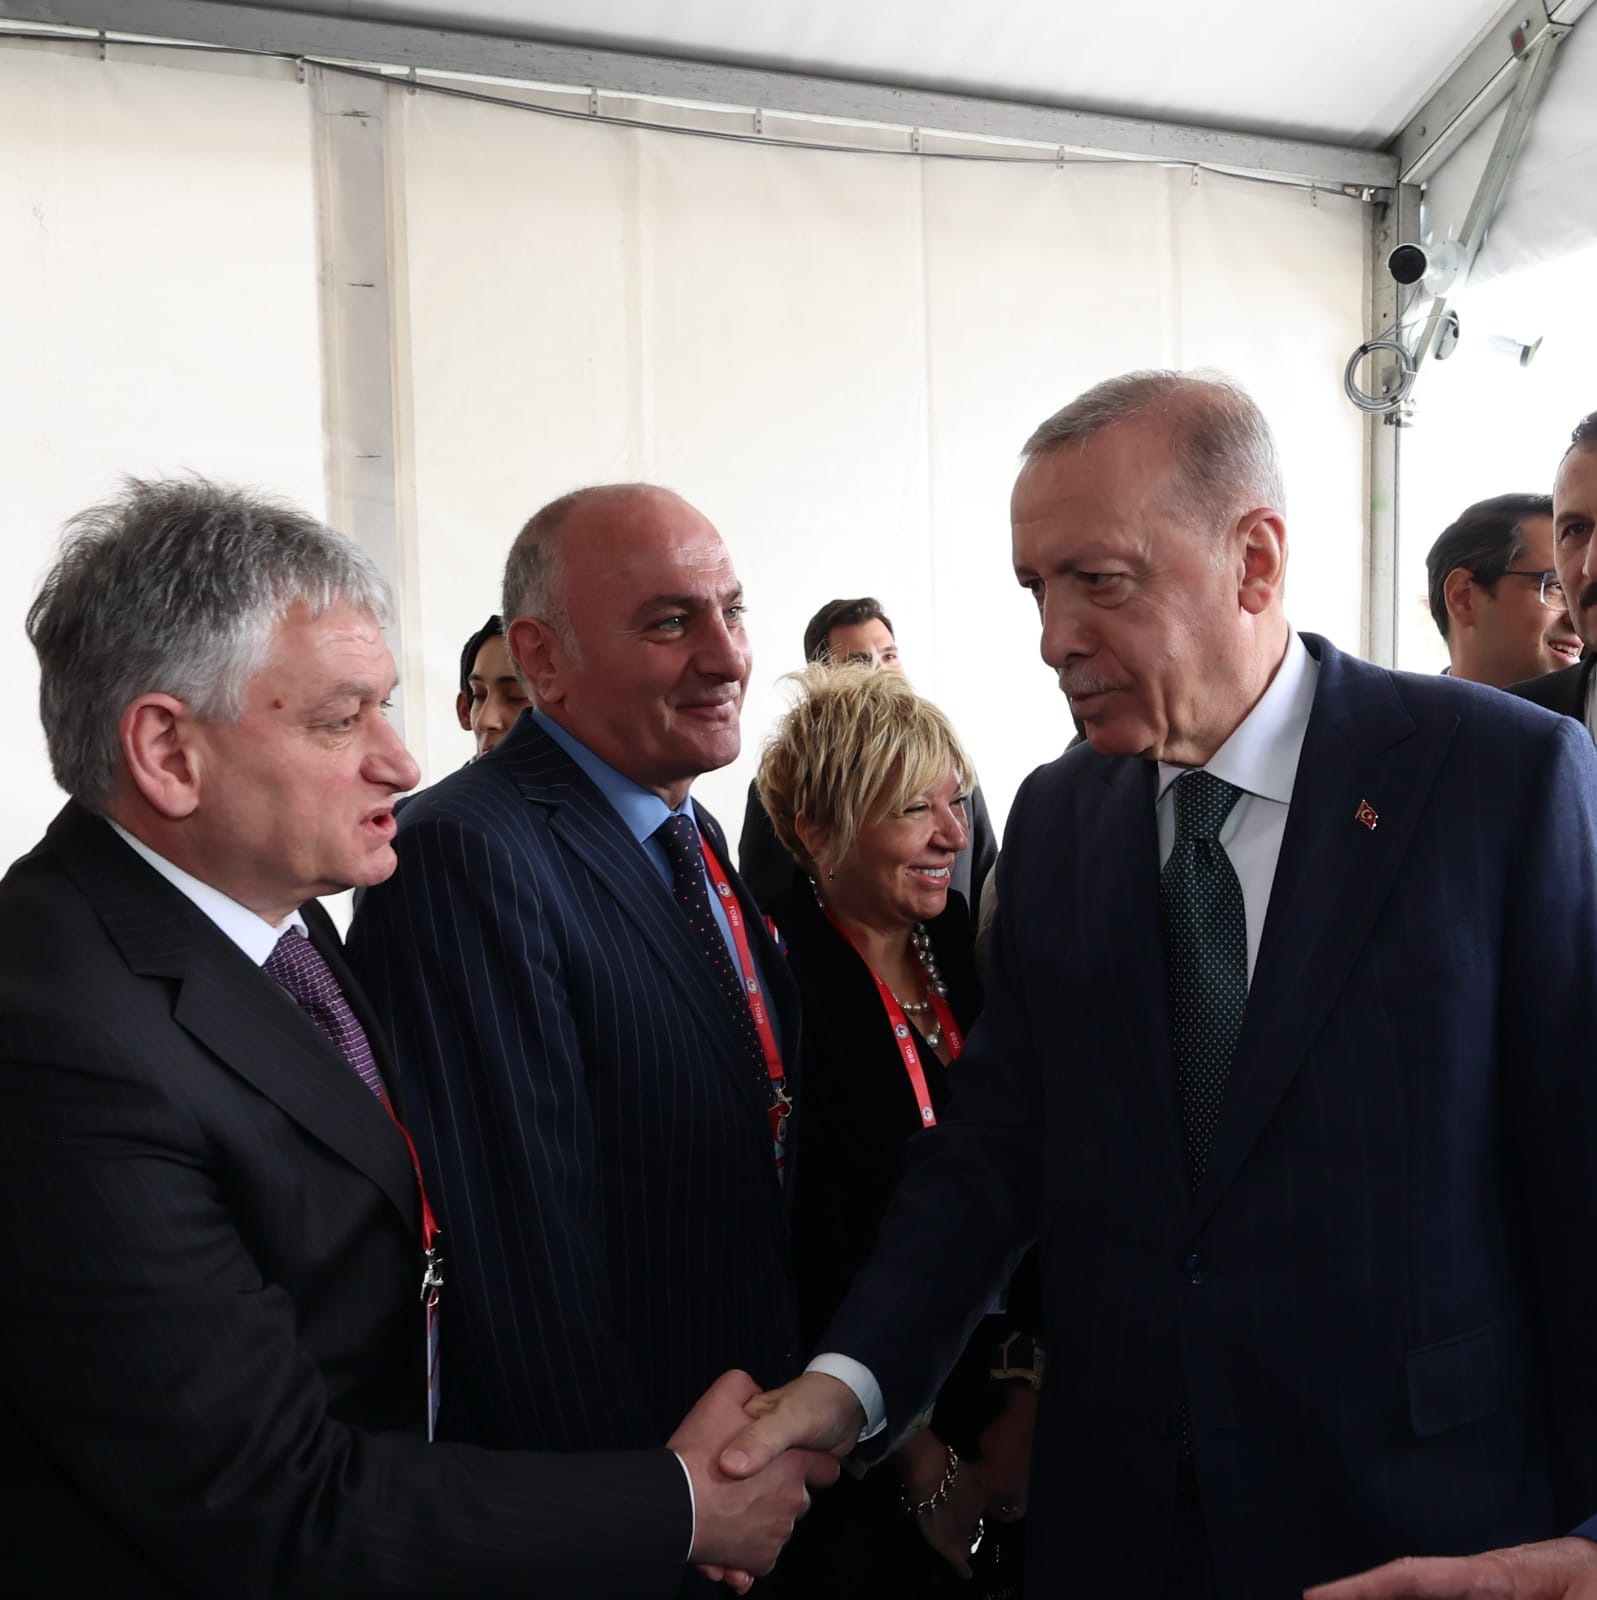 Türkiye Odalar ve Borsalar Birliği (TOBB) 80. Genel Kurulu'nda Cumhurbaşkanı Erdoğan ile Buluşma